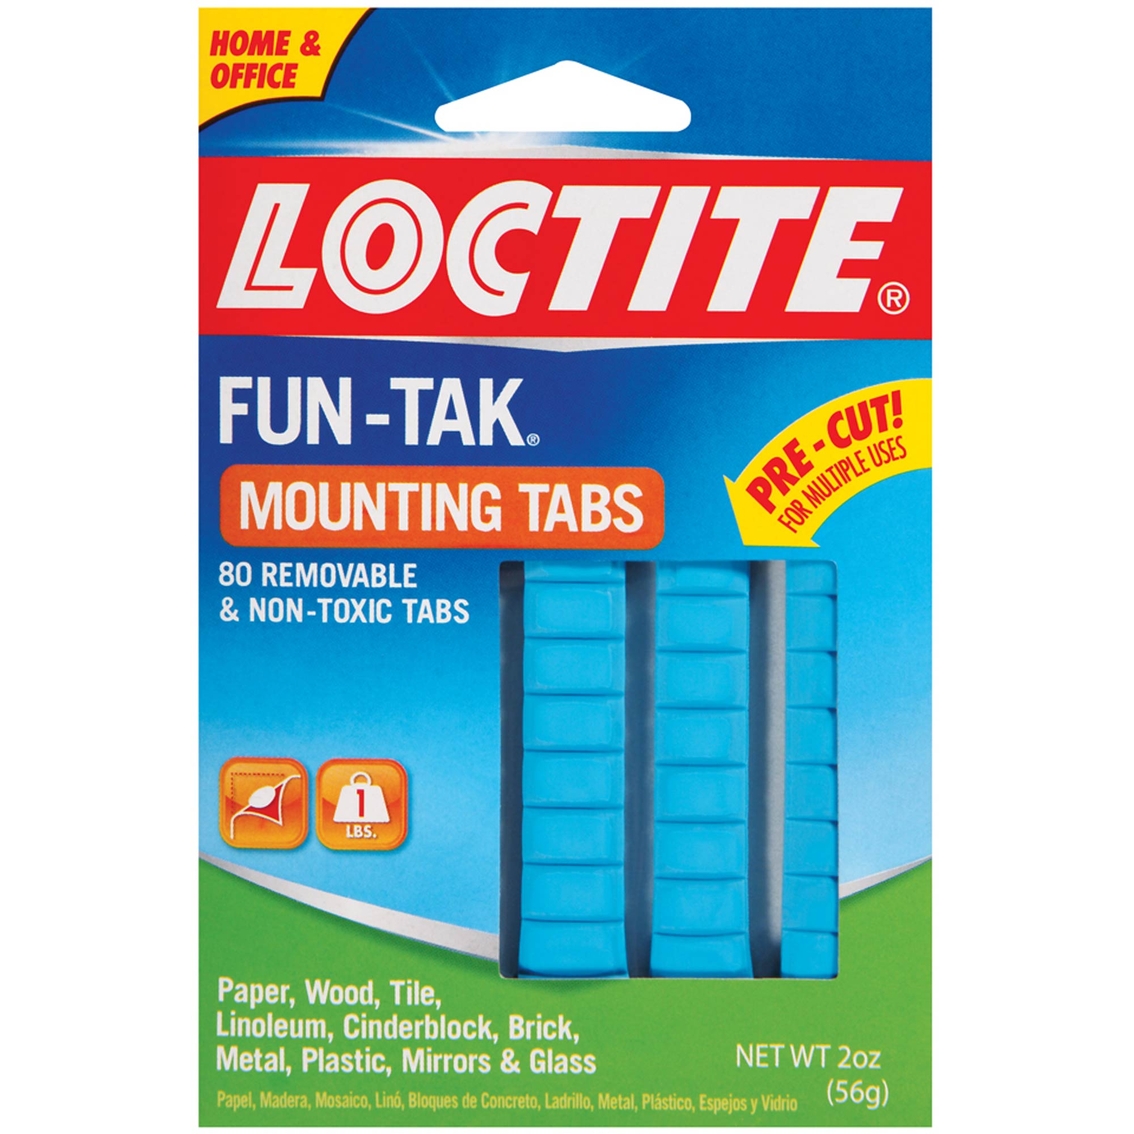 Loctite Fun-Tac Mounting Tabs